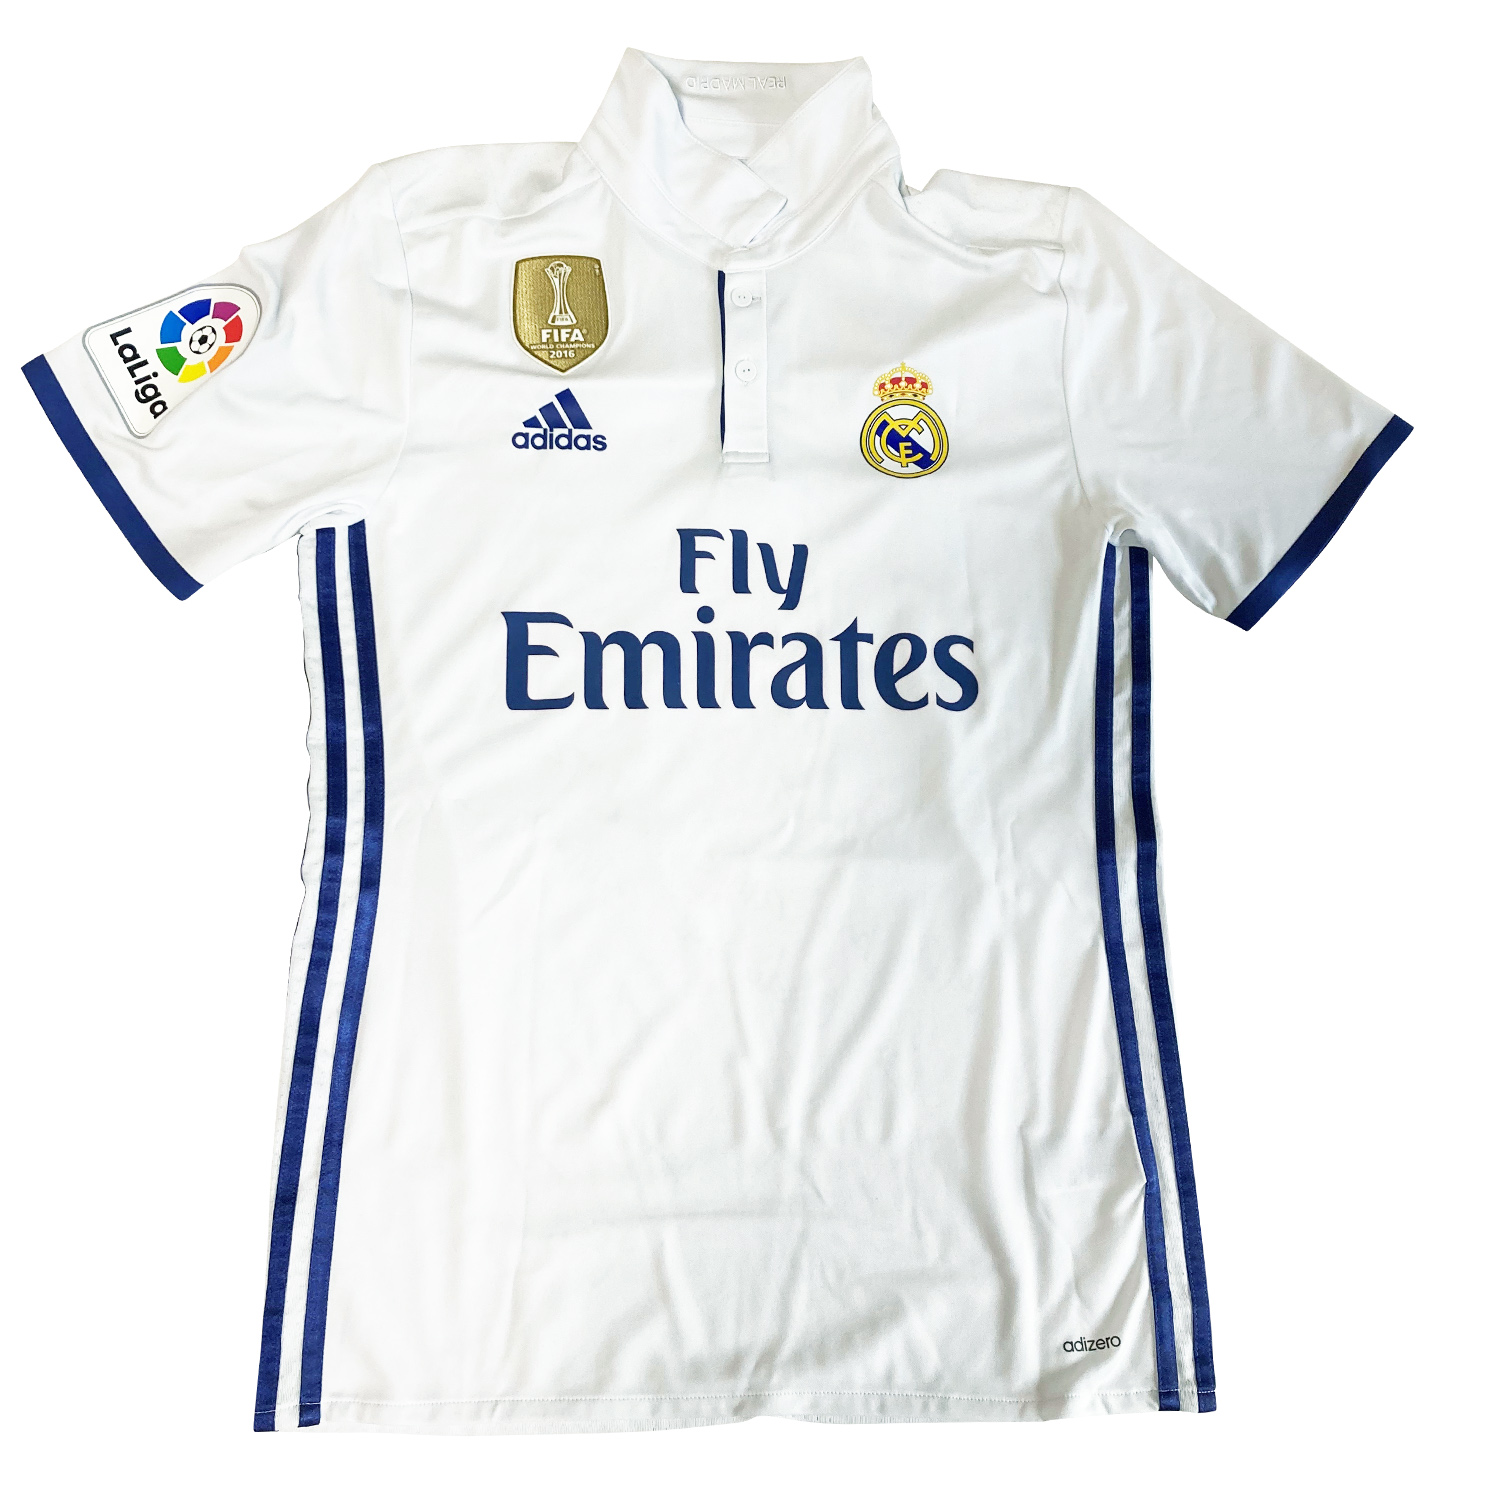 ルーカス・バスケス直筆サイン入り選手支給レアルマドリード2016-2017ホームユニフォーム / Lucas Vasquez signed Real  Madrid 2016-2017 player issued home shirt